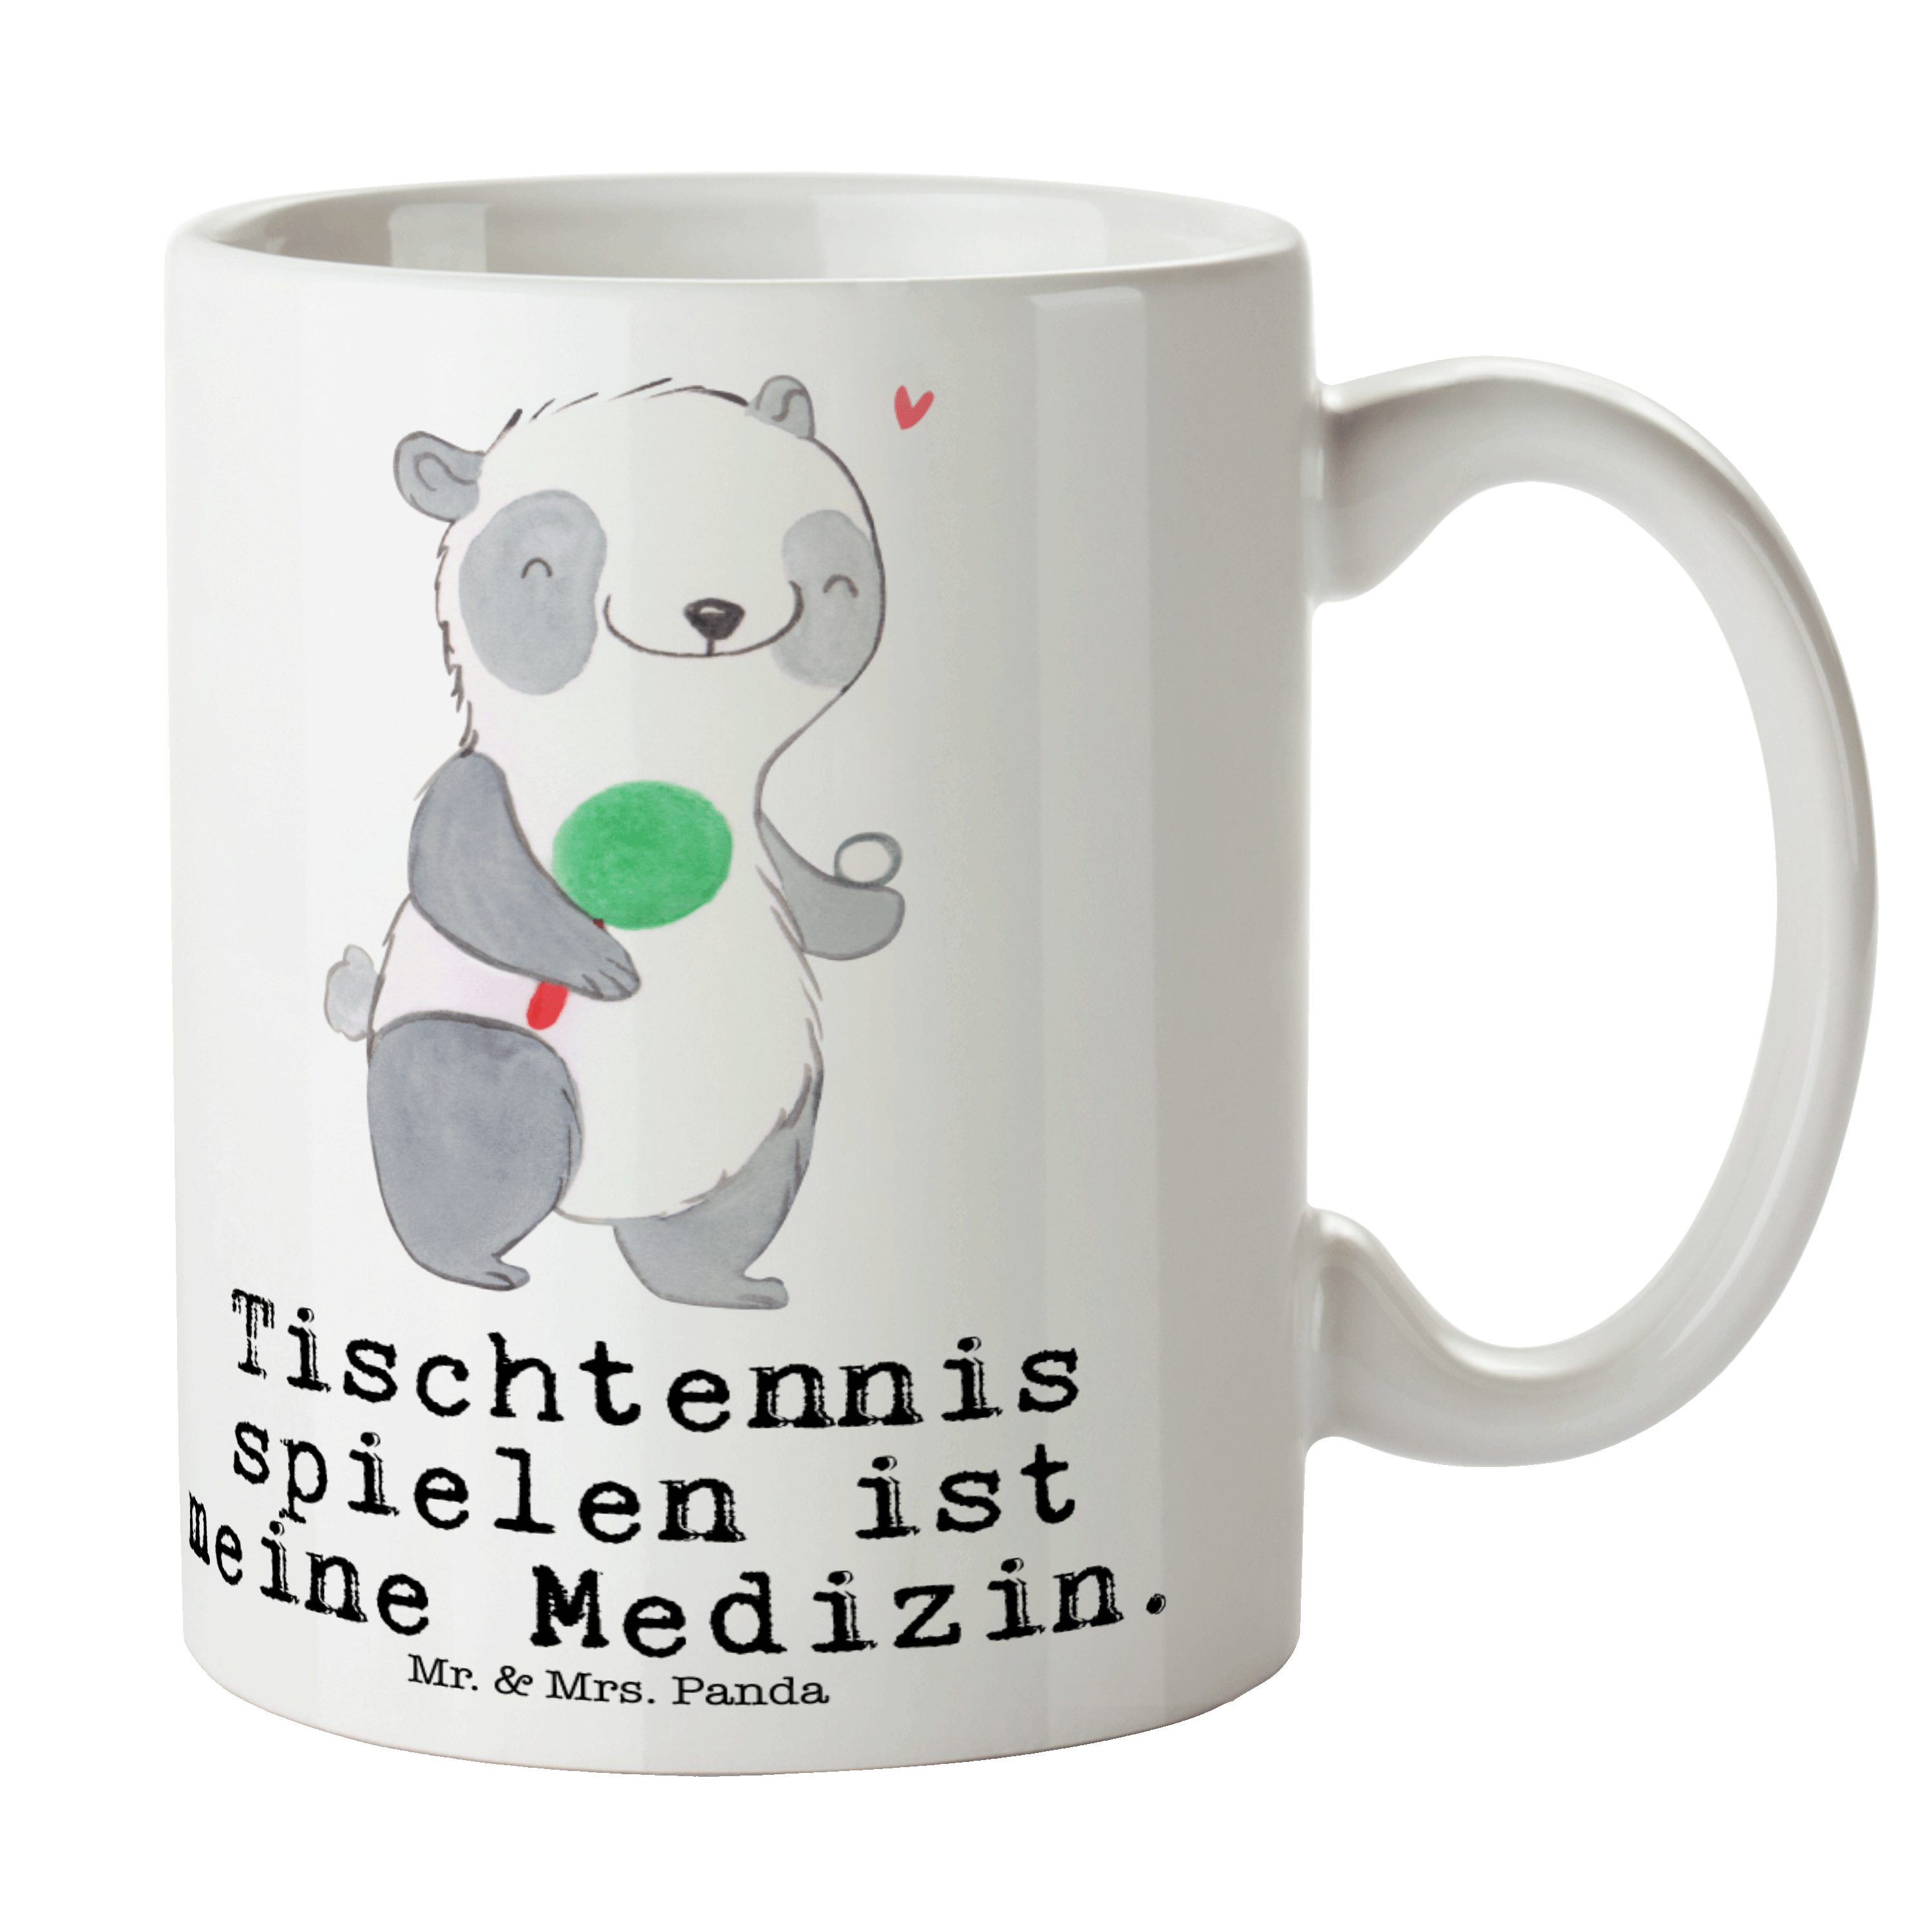 Mr. & Mrs. Panda Tasse Panda Tischtennis Medizin - Weiß - Geschenk, Schenken, Tasse Motive, Keramik